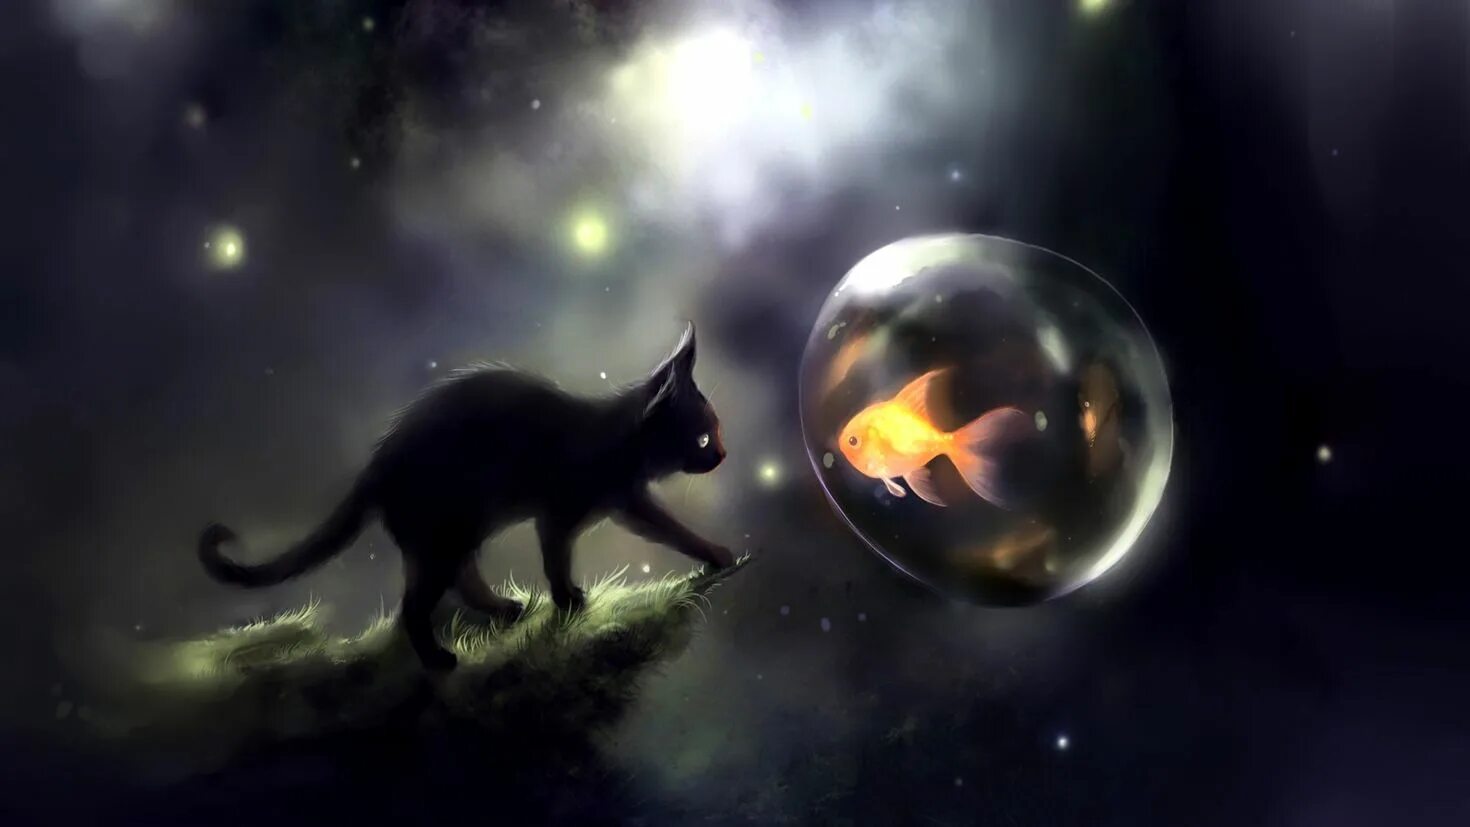 Литовский художник Rihards Donskis (apofiss). Котики арт. Черный кот фэнтези. Фэнтези кошки.